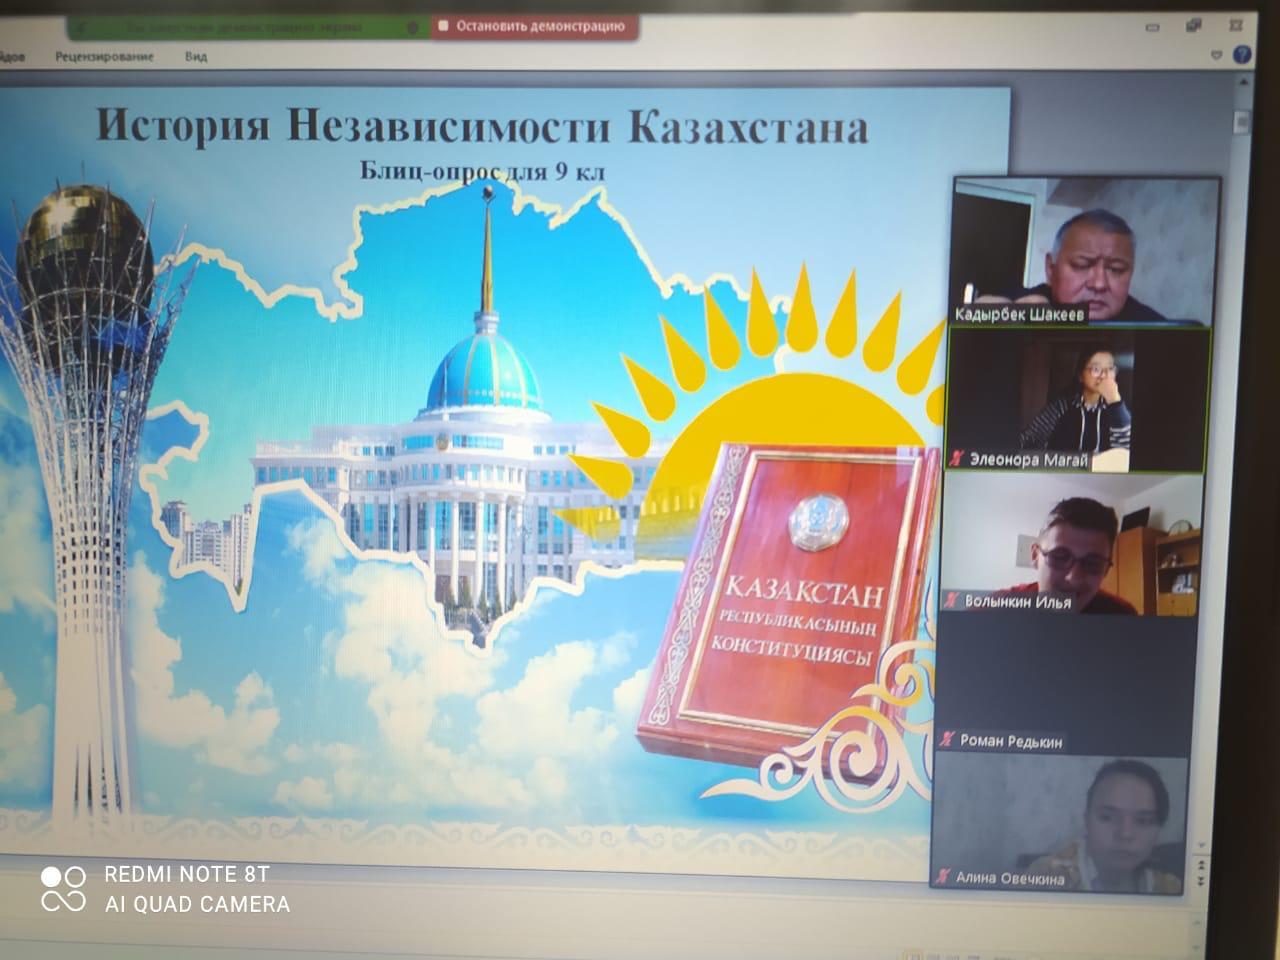 Блиц-опрос по истории Независимости Казахстана